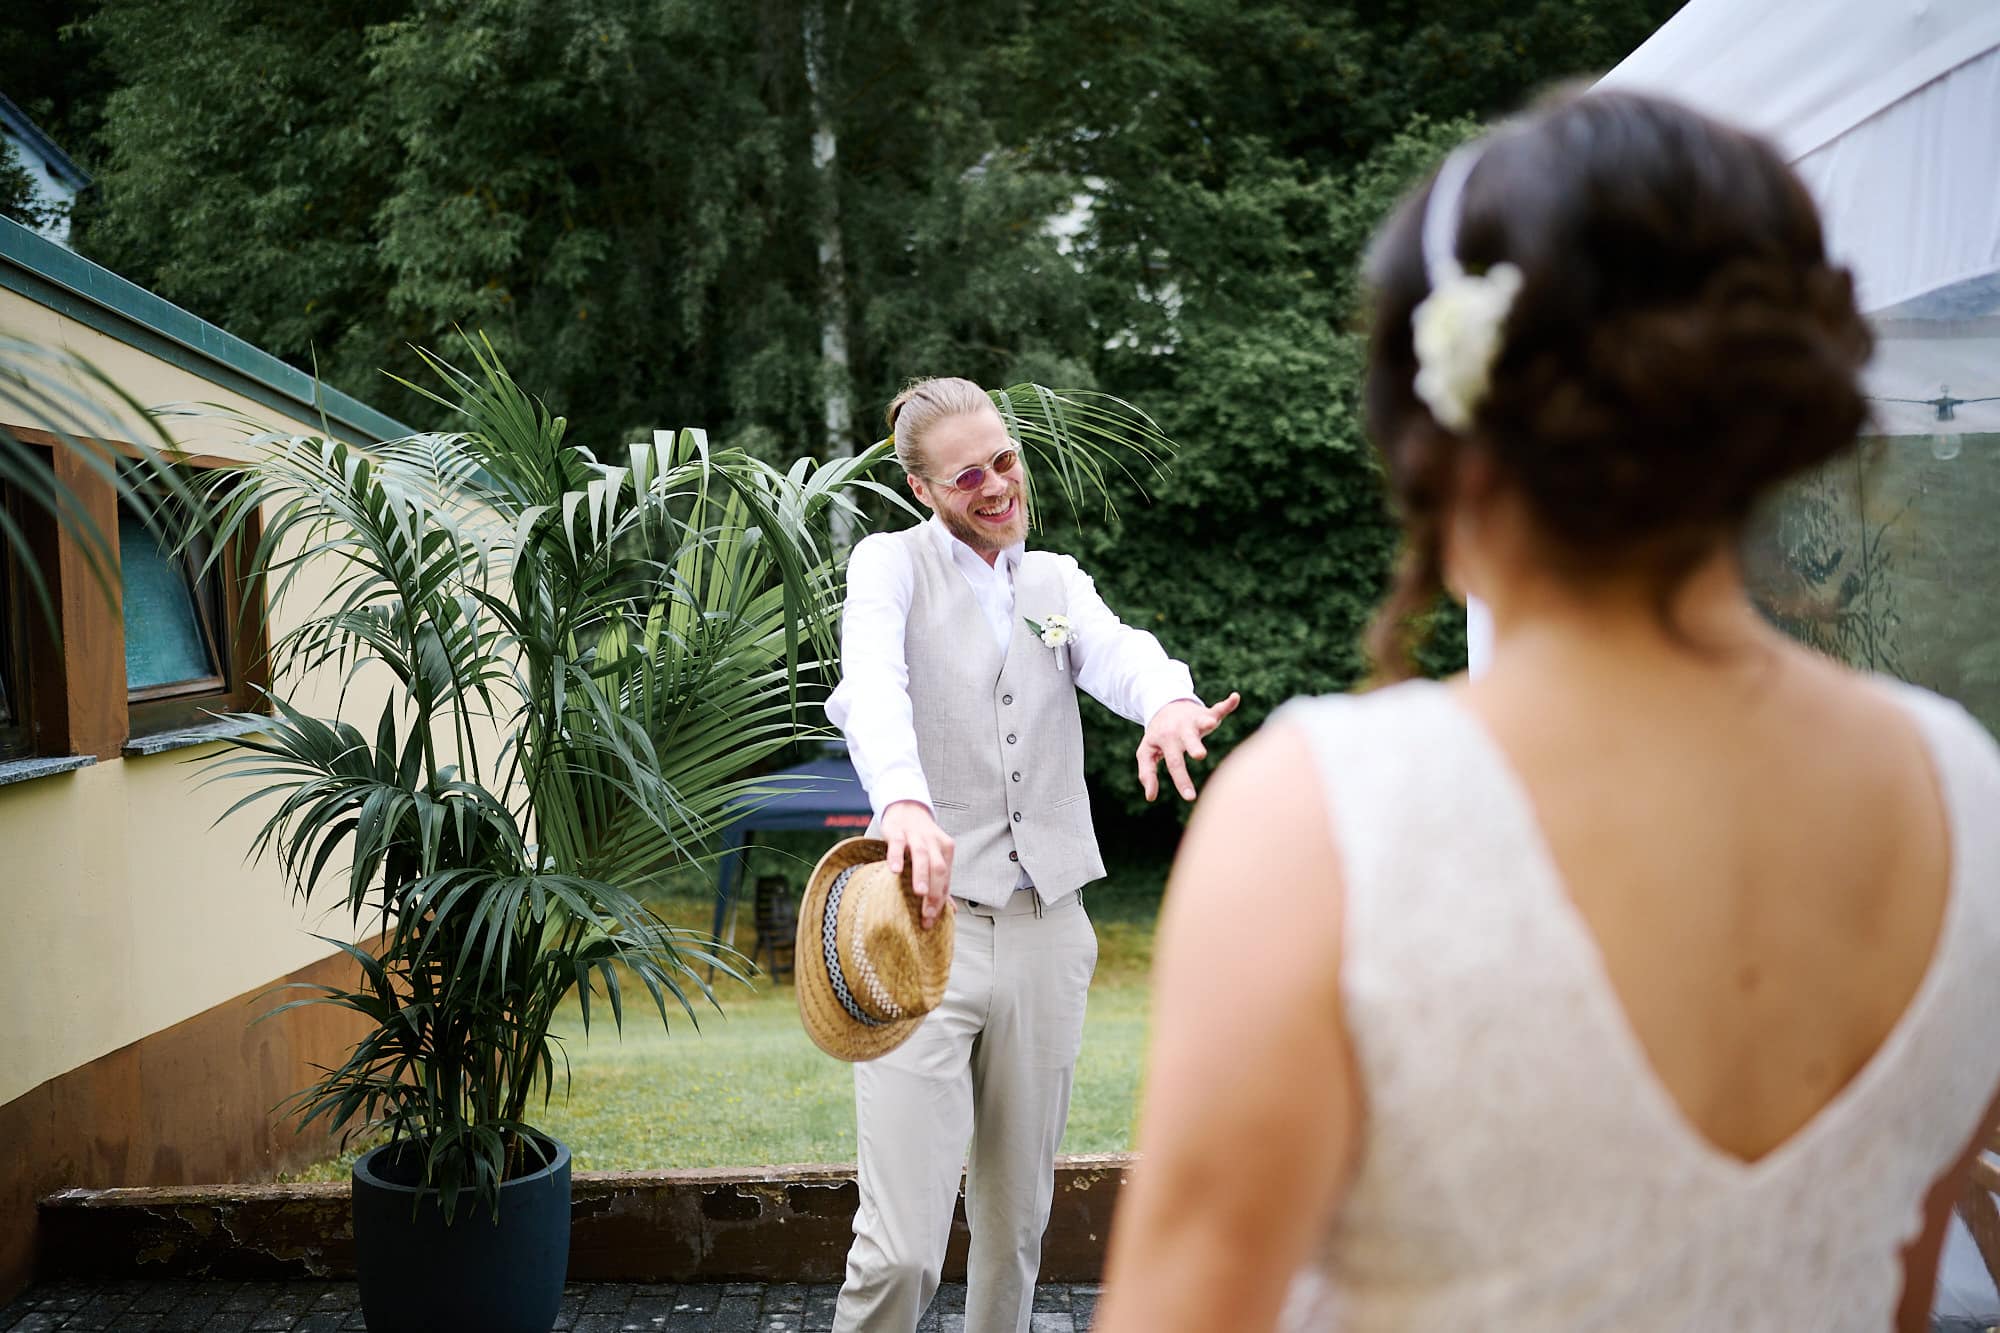 Der Bräutigam im weißen Anzug lächelt und deutet auf die Braut bei einer Hochzeit im Freien.